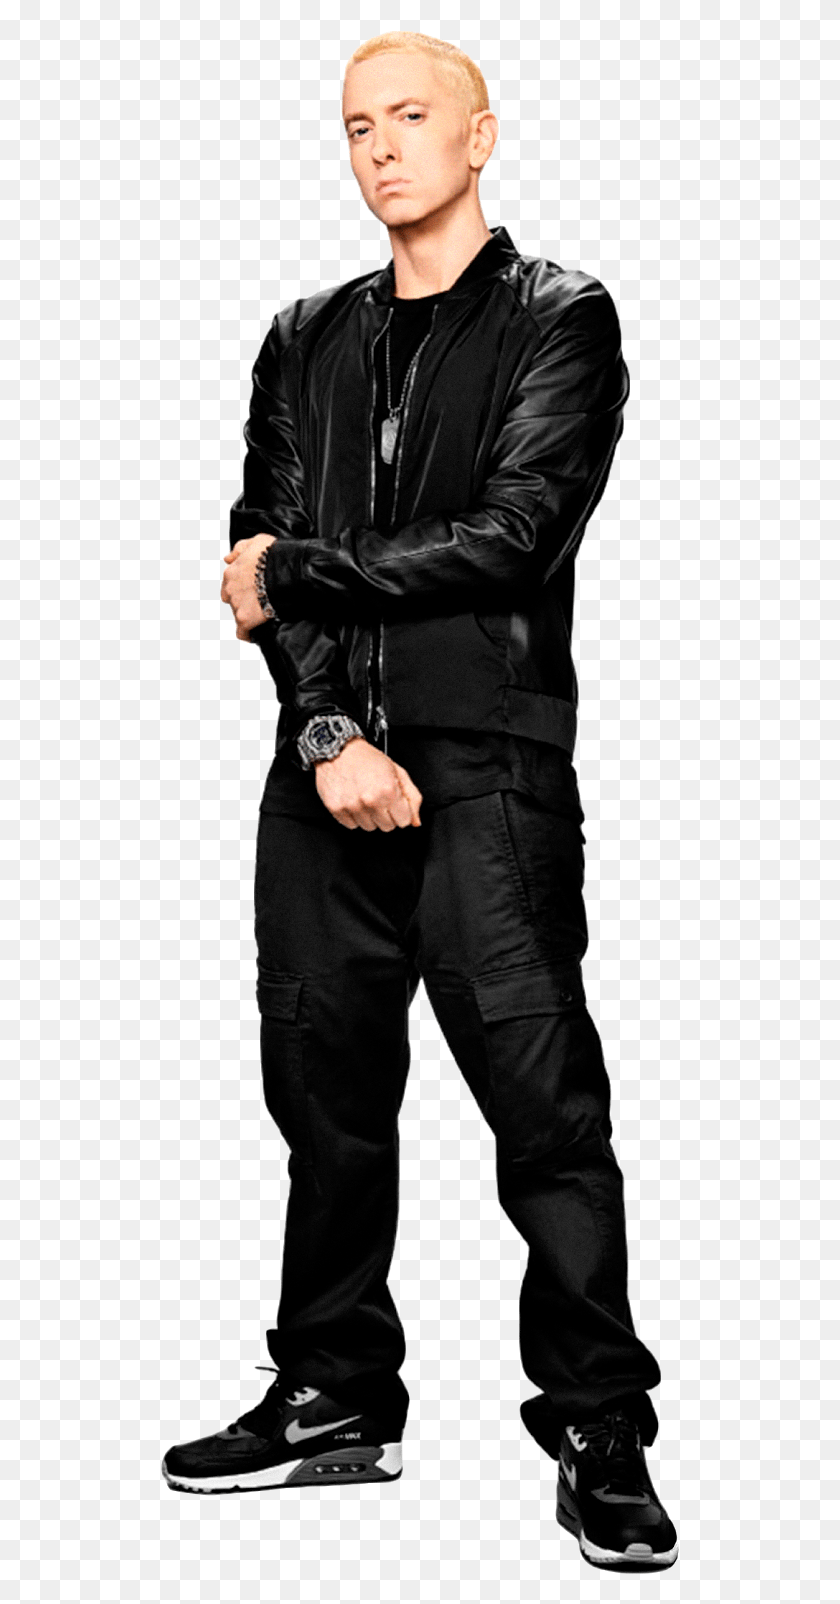 519x1544 Descargar Png Eminem Pic Fondo Dean Ambrose Escudo Atuendo, Ropa, Ropa, Persona Hd Png